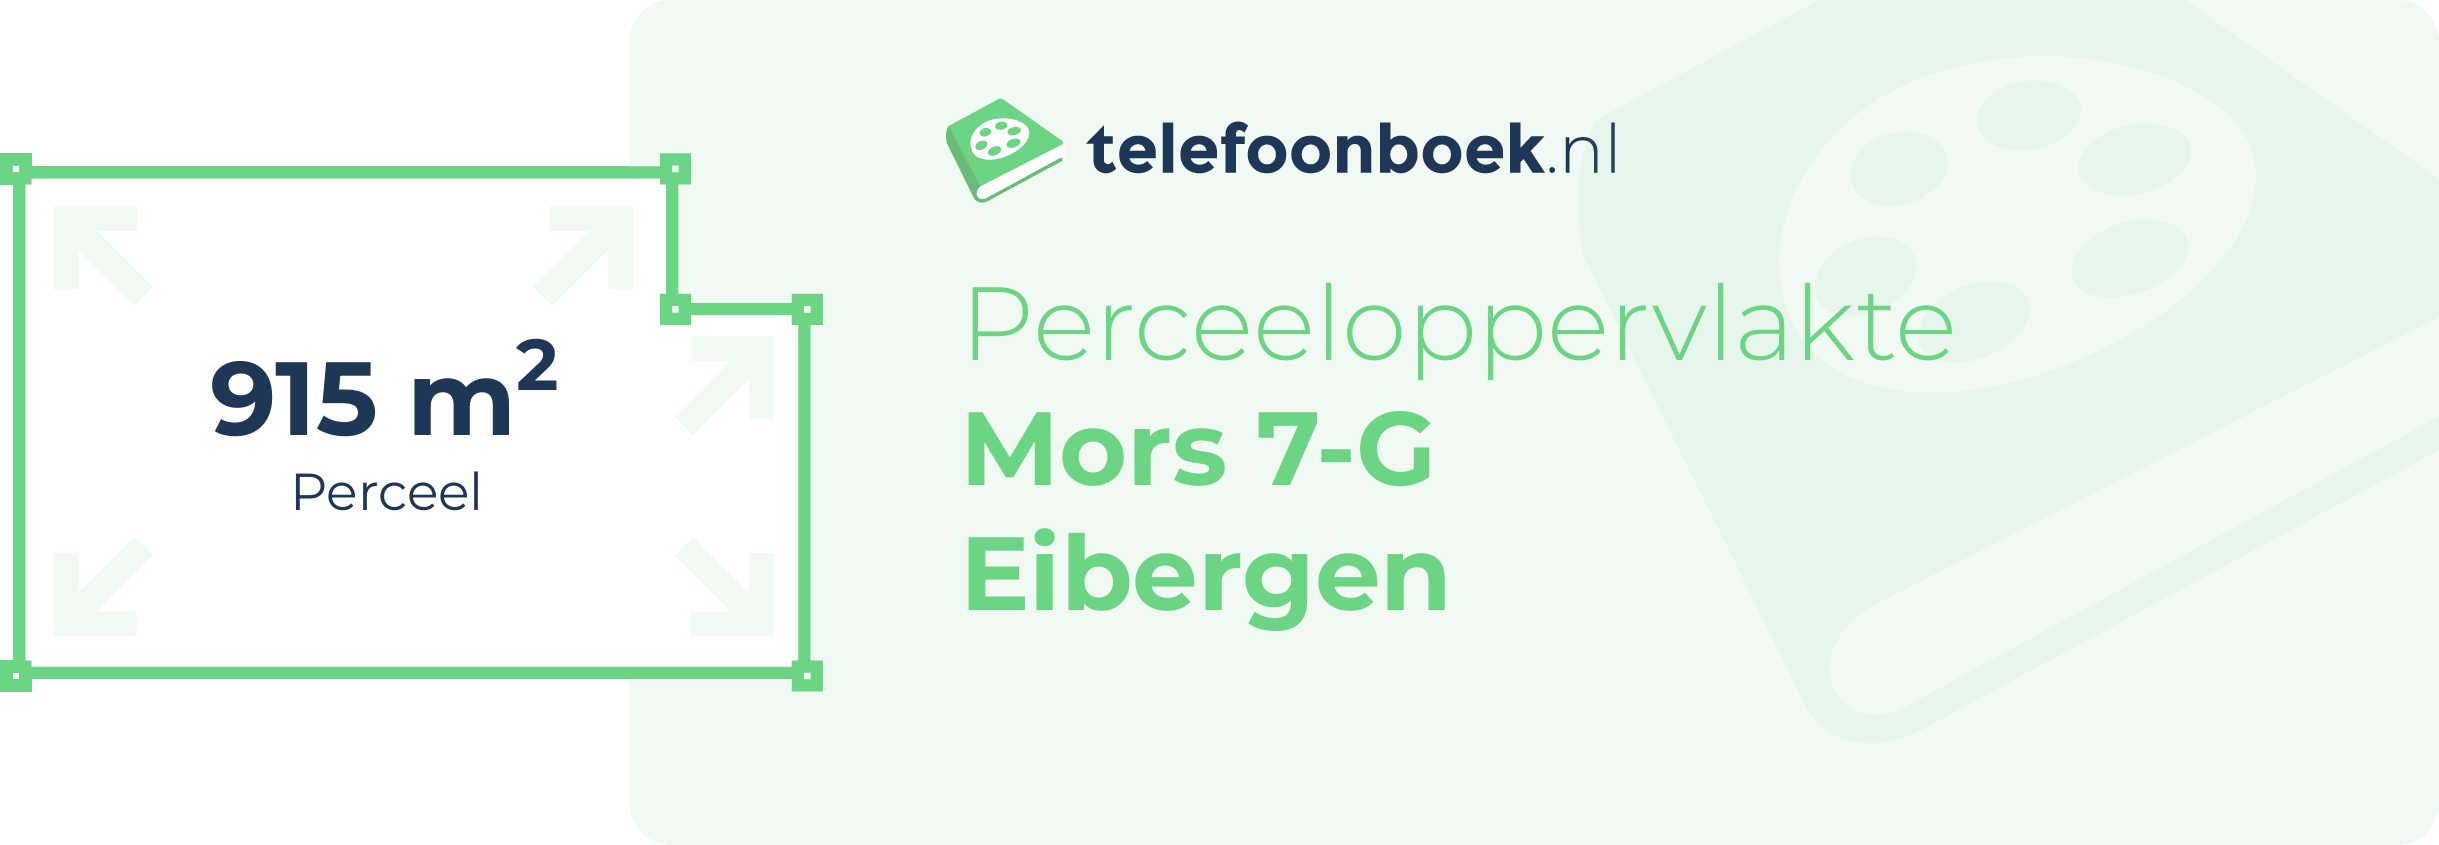 Perceeloppervlakte Mors 7-G Eibergen